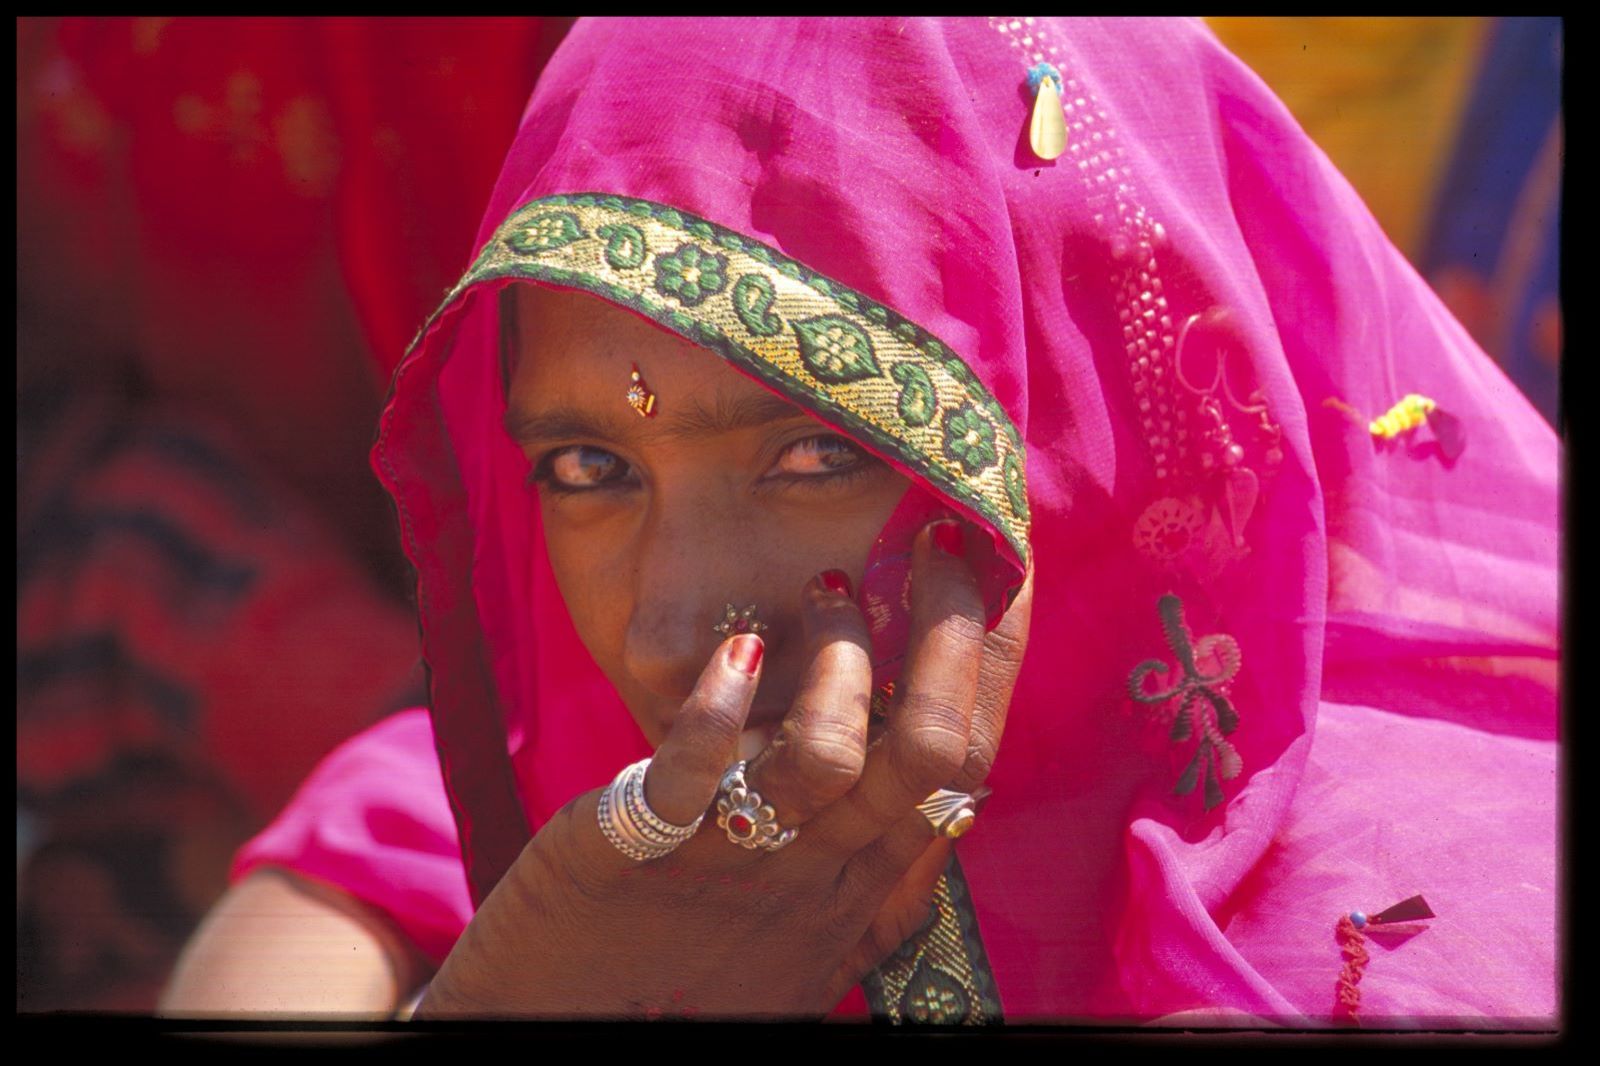 Frau in Indien